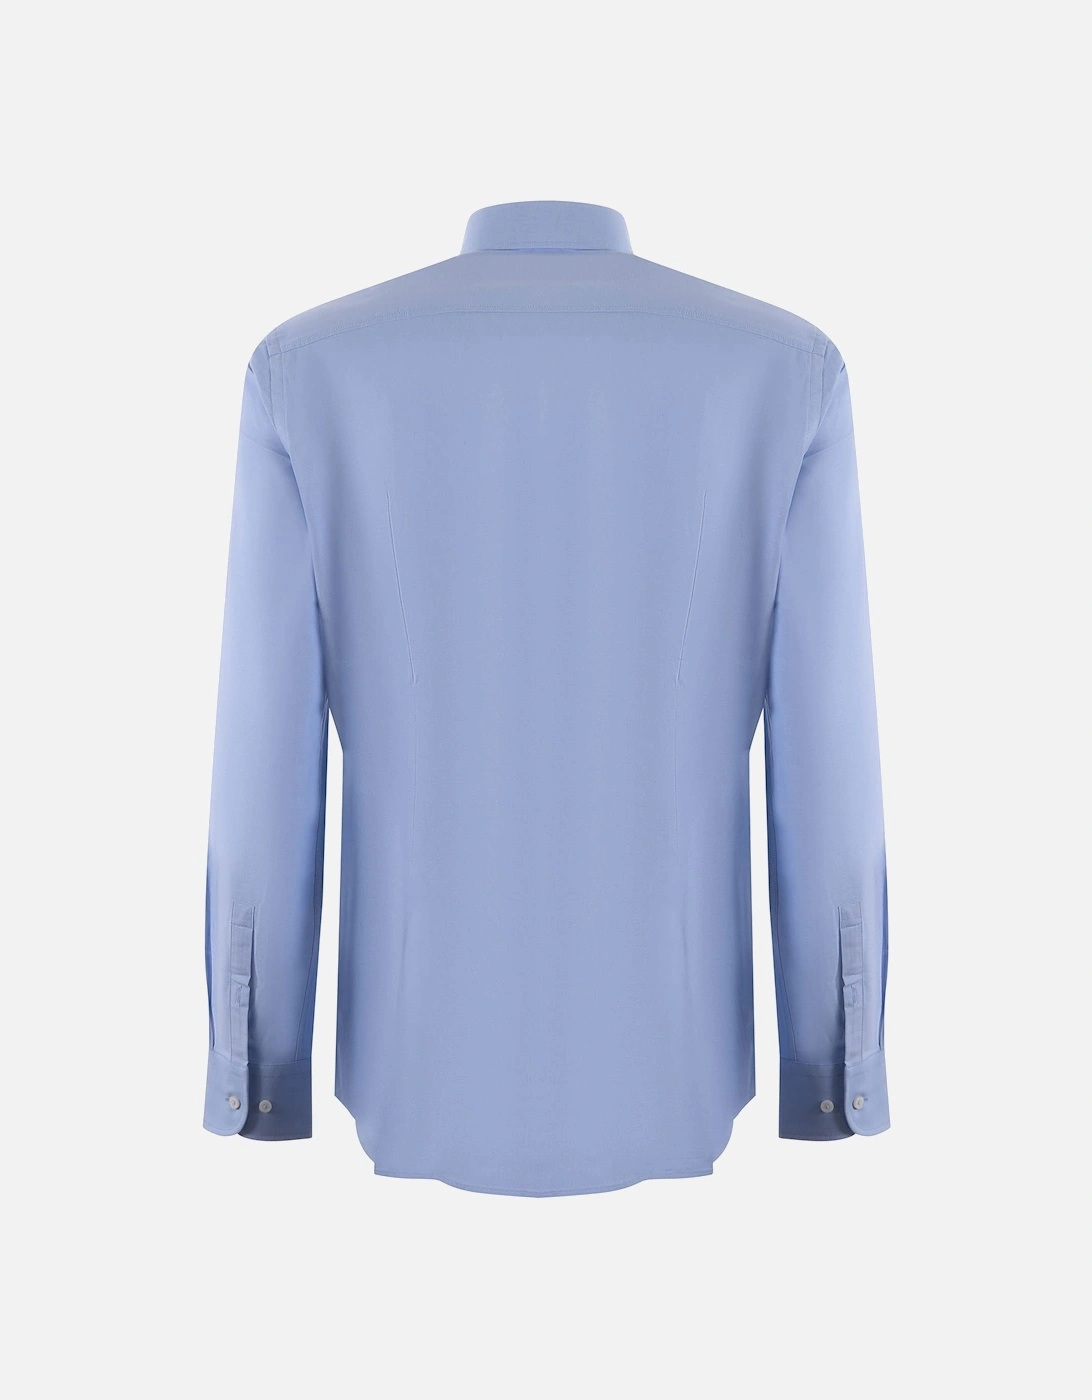 Boss H-hank-kent-c6-242 Long Sleeved Shirt Light Pastel Blue